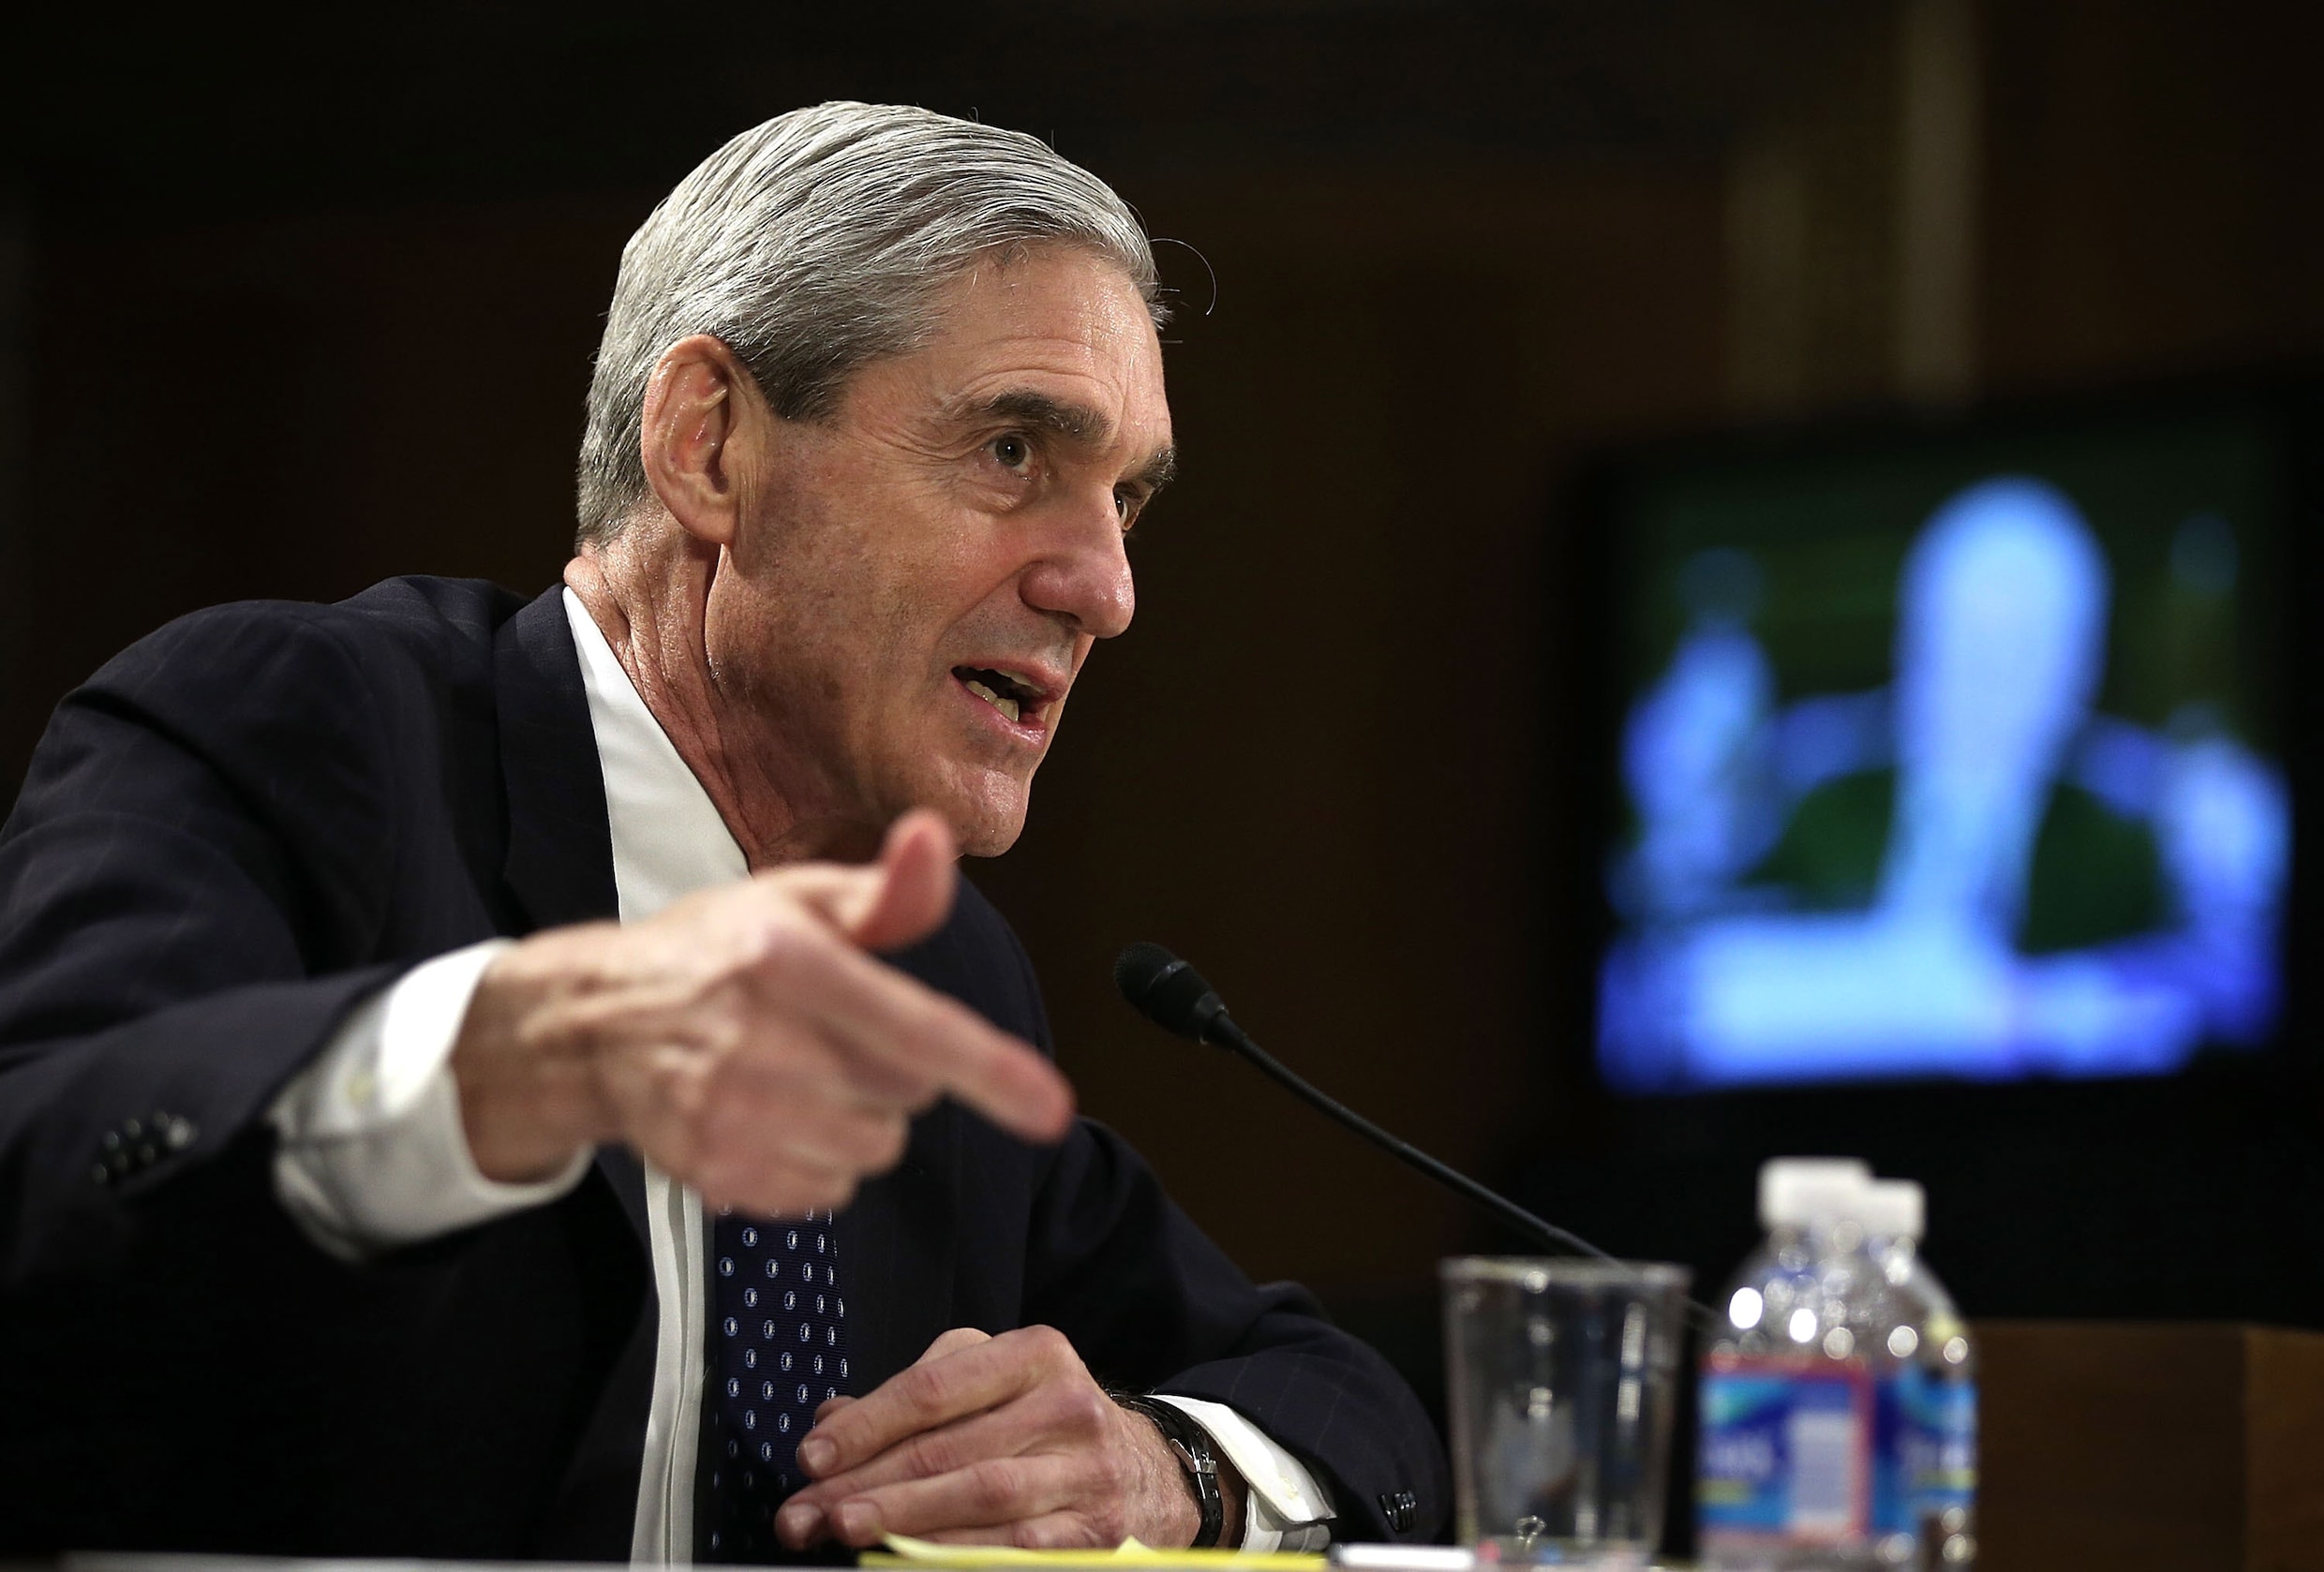 Mueller levert eindrapport over Russische inmenging Amerikaanse presidentsverkiezingen in